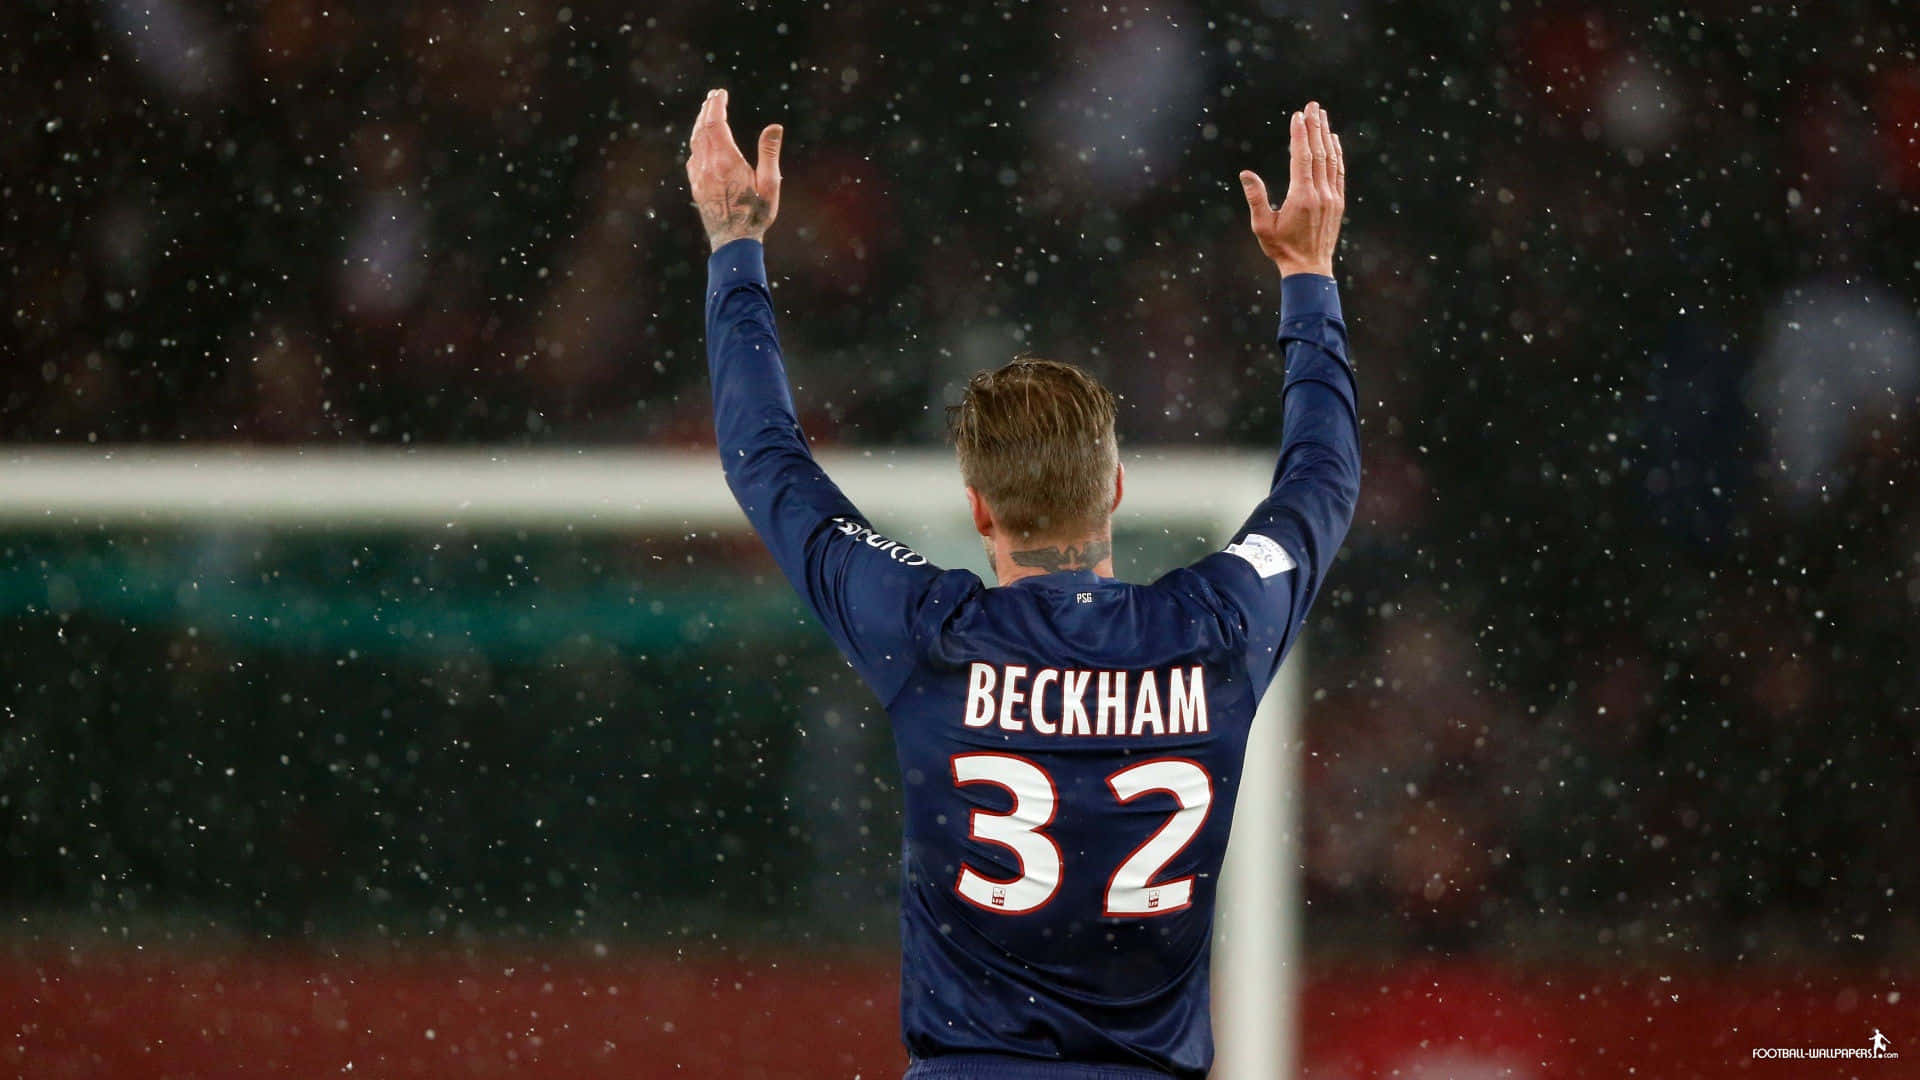 Imagendel Futbolista David Beckham